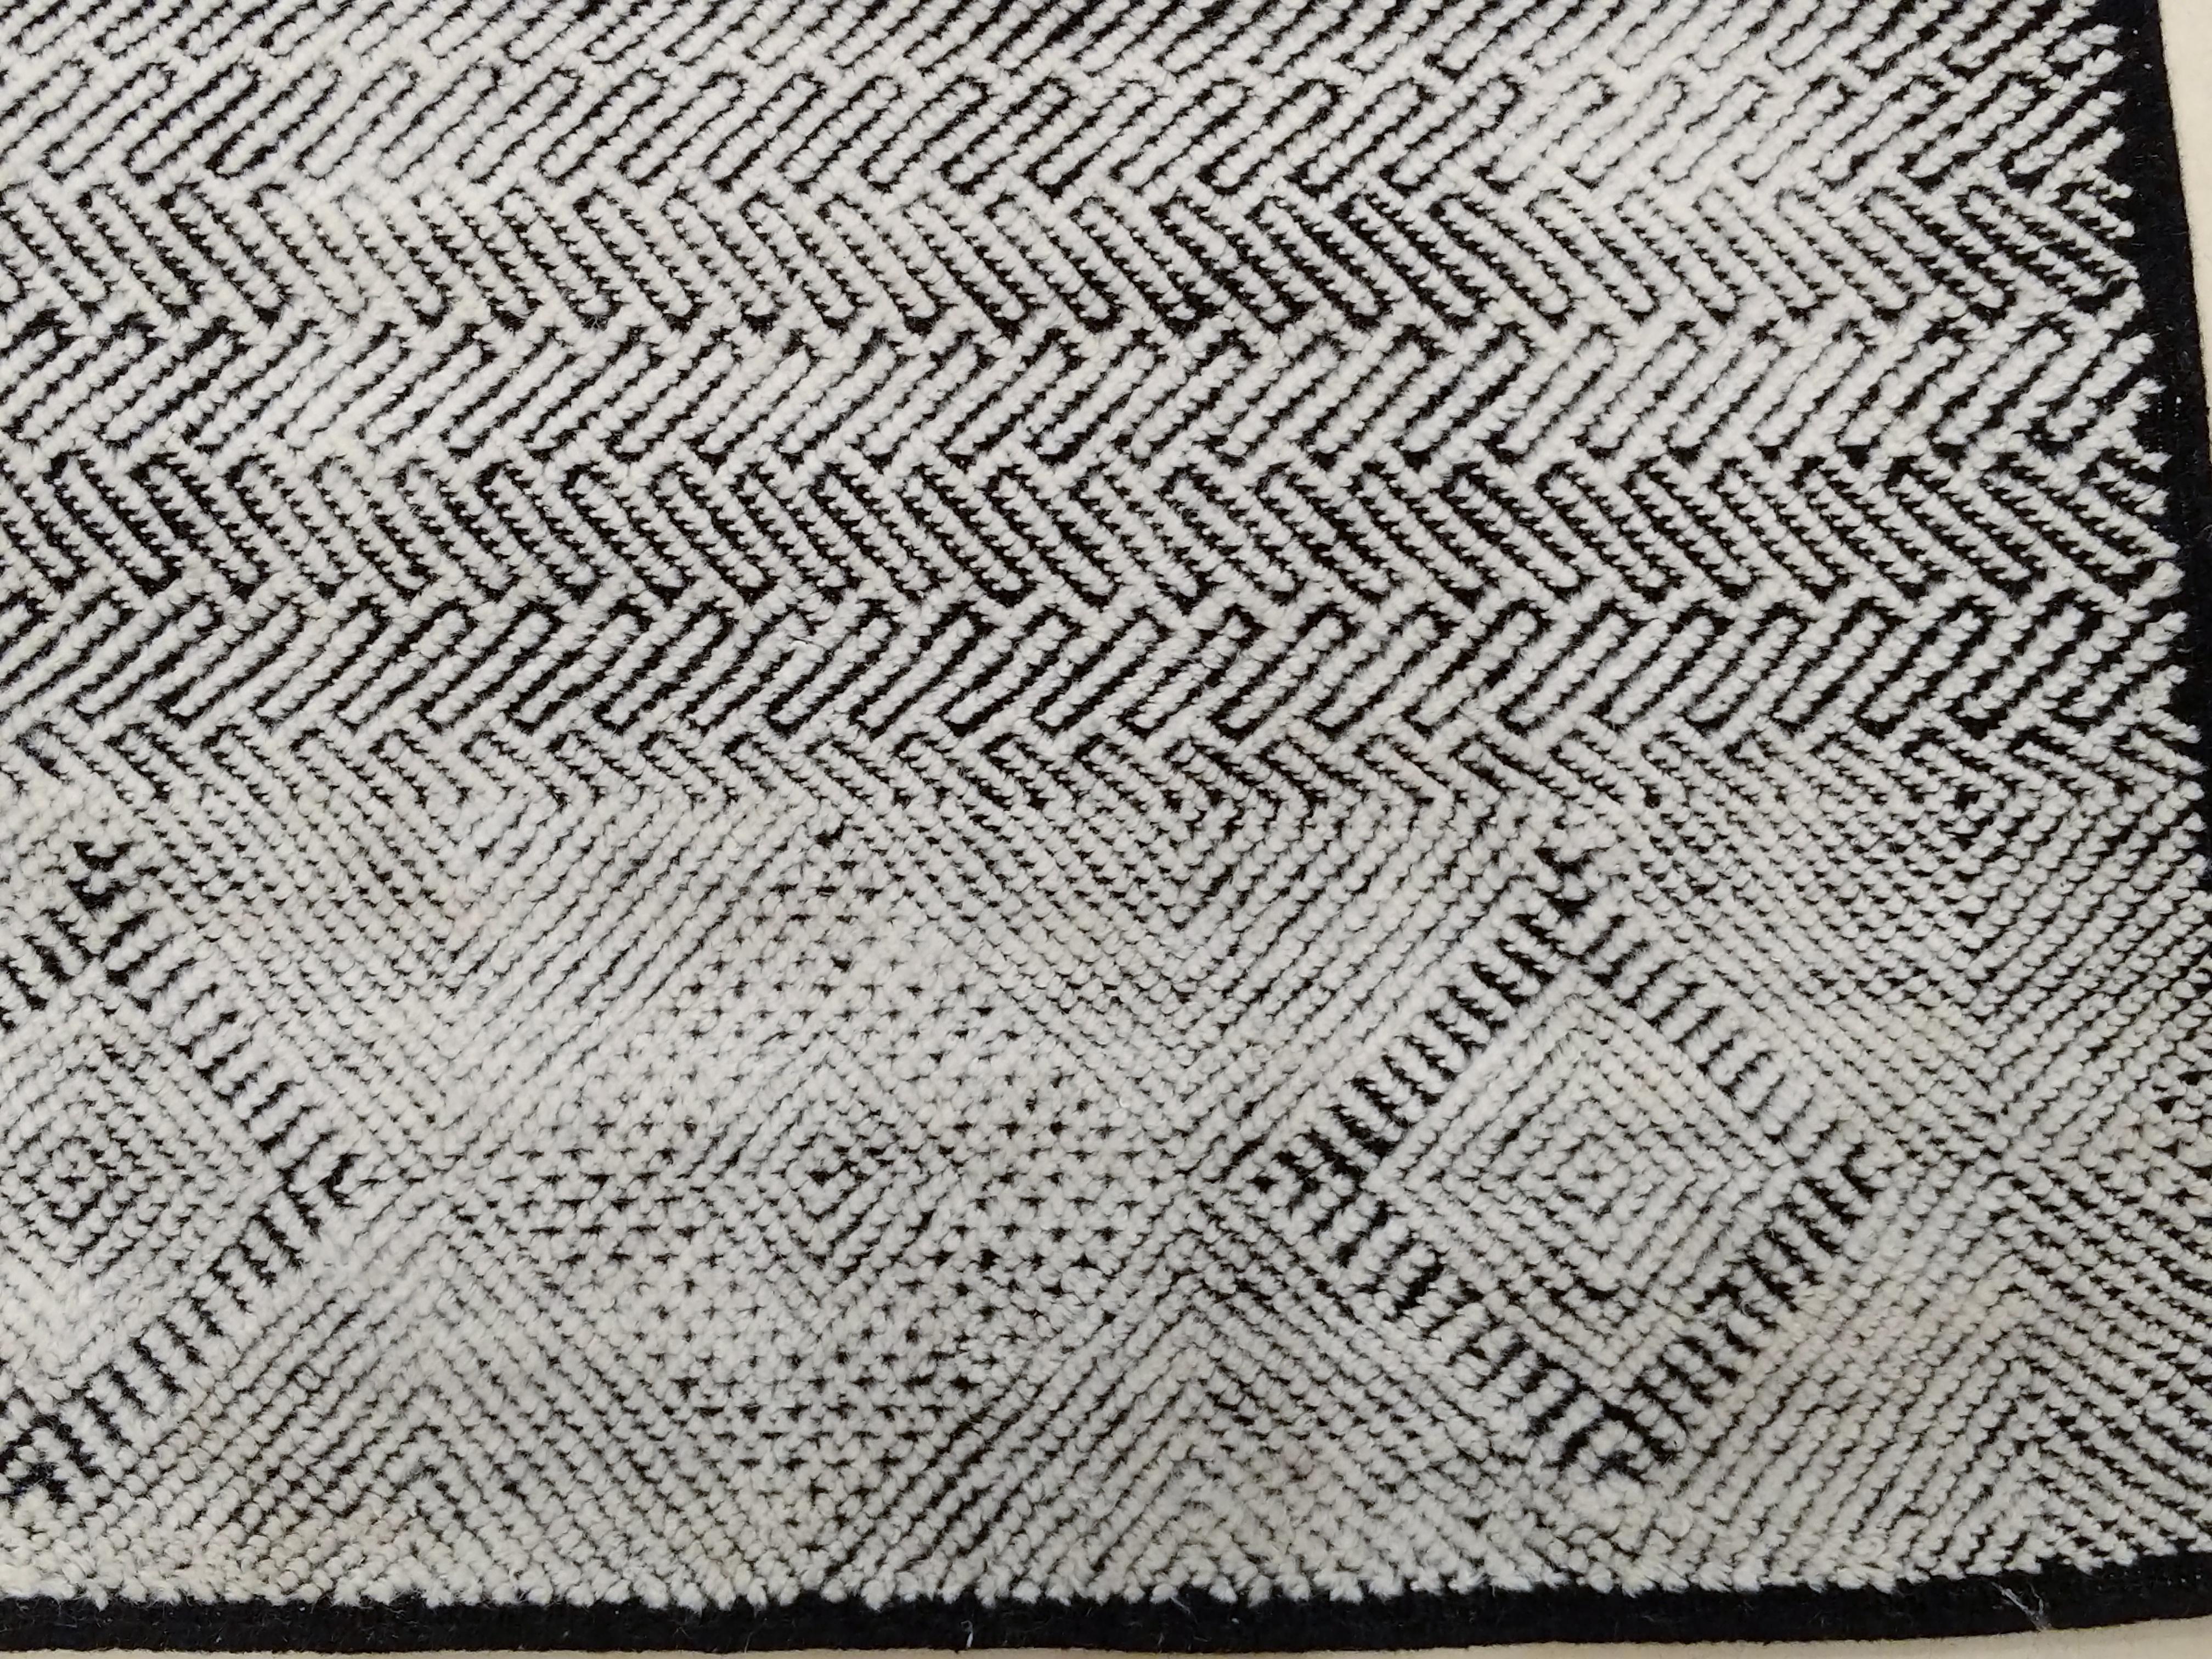 Shoowa gehört zu unserer Textural-Kollektion zeitgenössischer Teppiche, die von Designklassikern der Jahrhundertmitte inspiriert sind. Er zeichnet sich durch einen schwarzen niedrigen Flor aus, der mit einem elfenbeinfarbenen hohen Flor